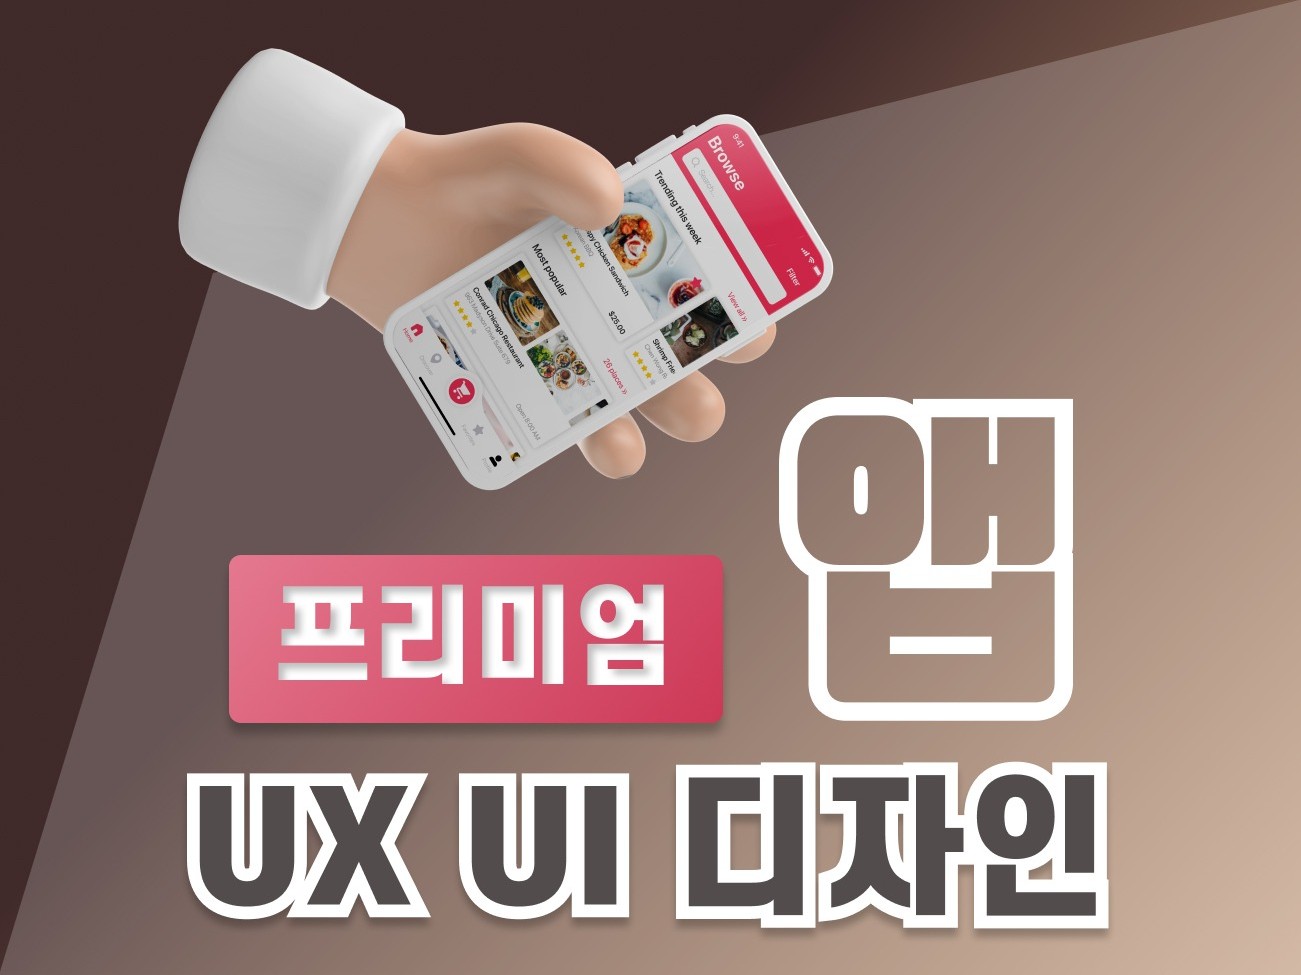 프리미엄 모바일 앱 UX UI 디자인해 드립니다.